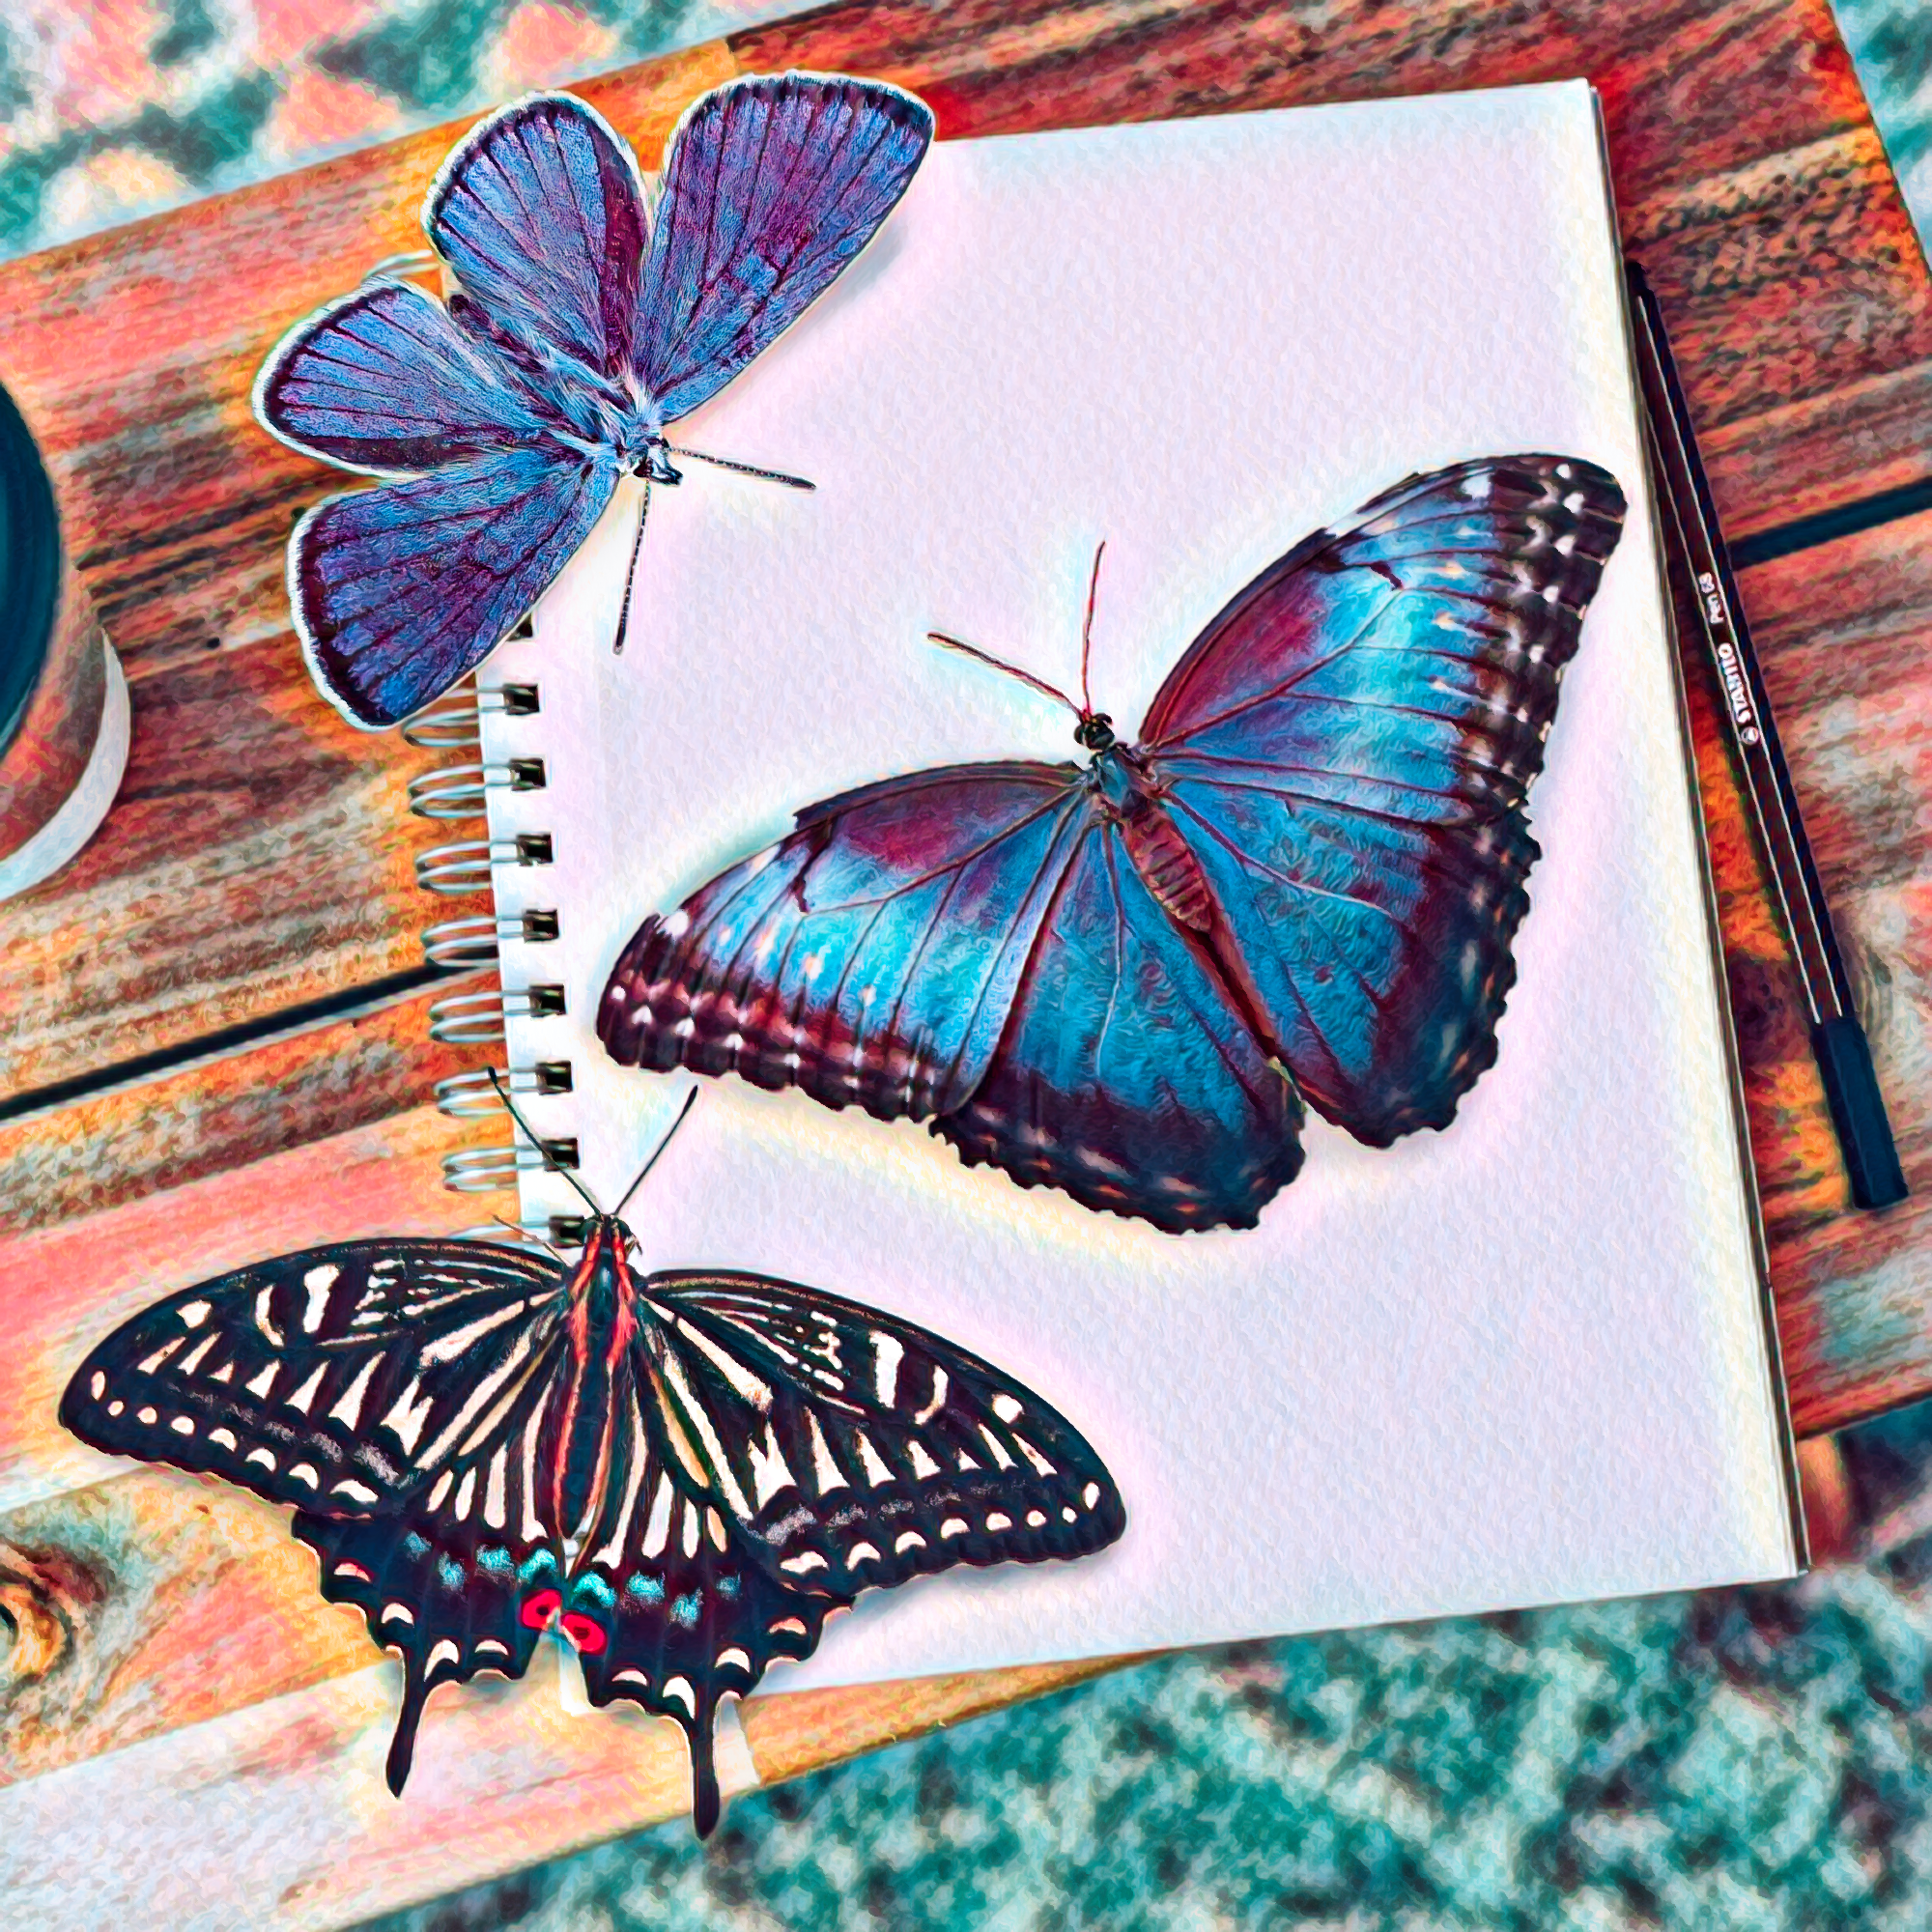 無料イラスト 背景画像素材 机の蝶とノートと色鉛筆風リアルなイラスト Free Illustlation くりえいてぃぶ